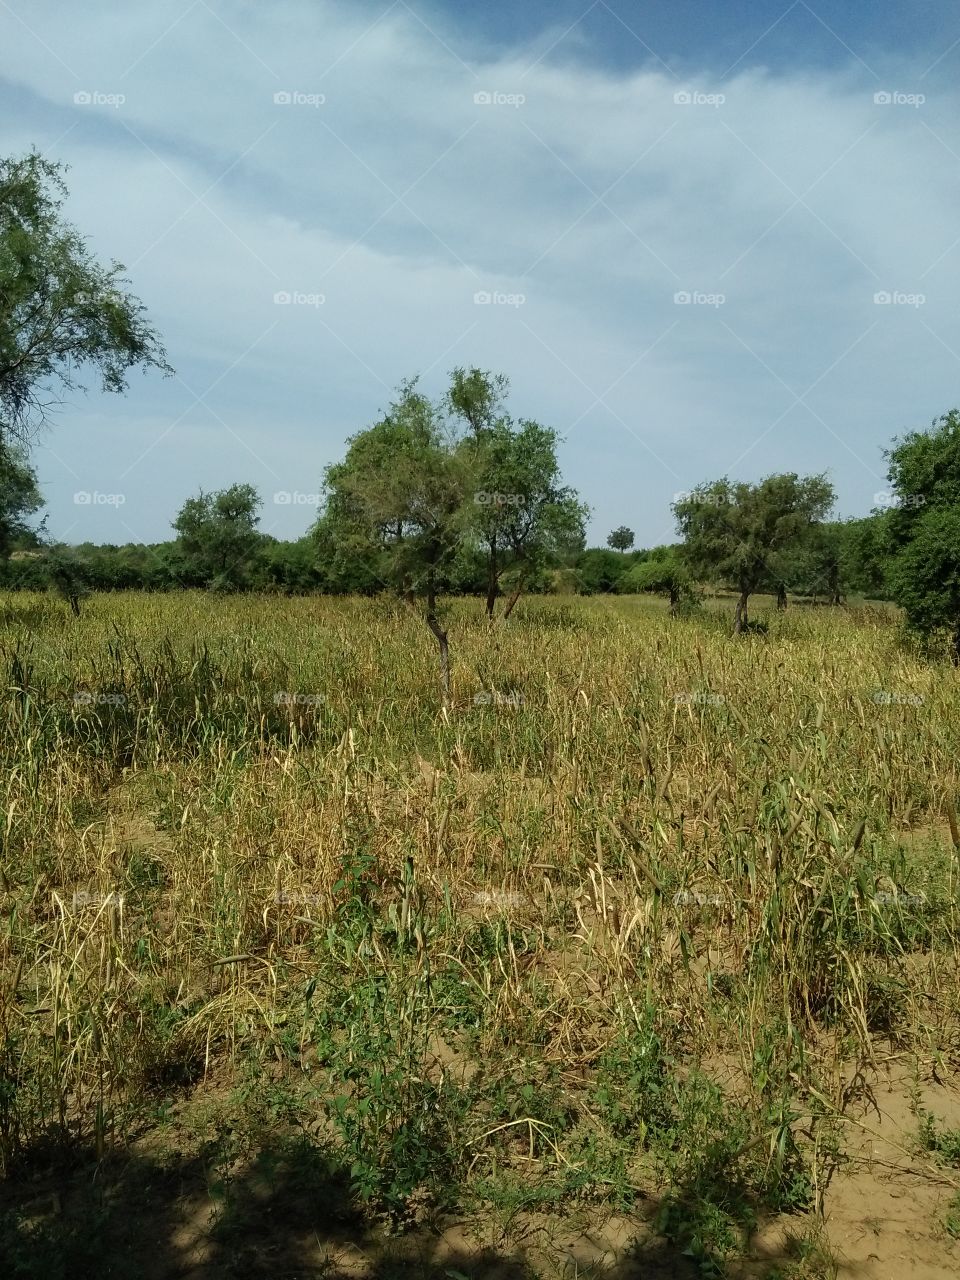 jodhpur village